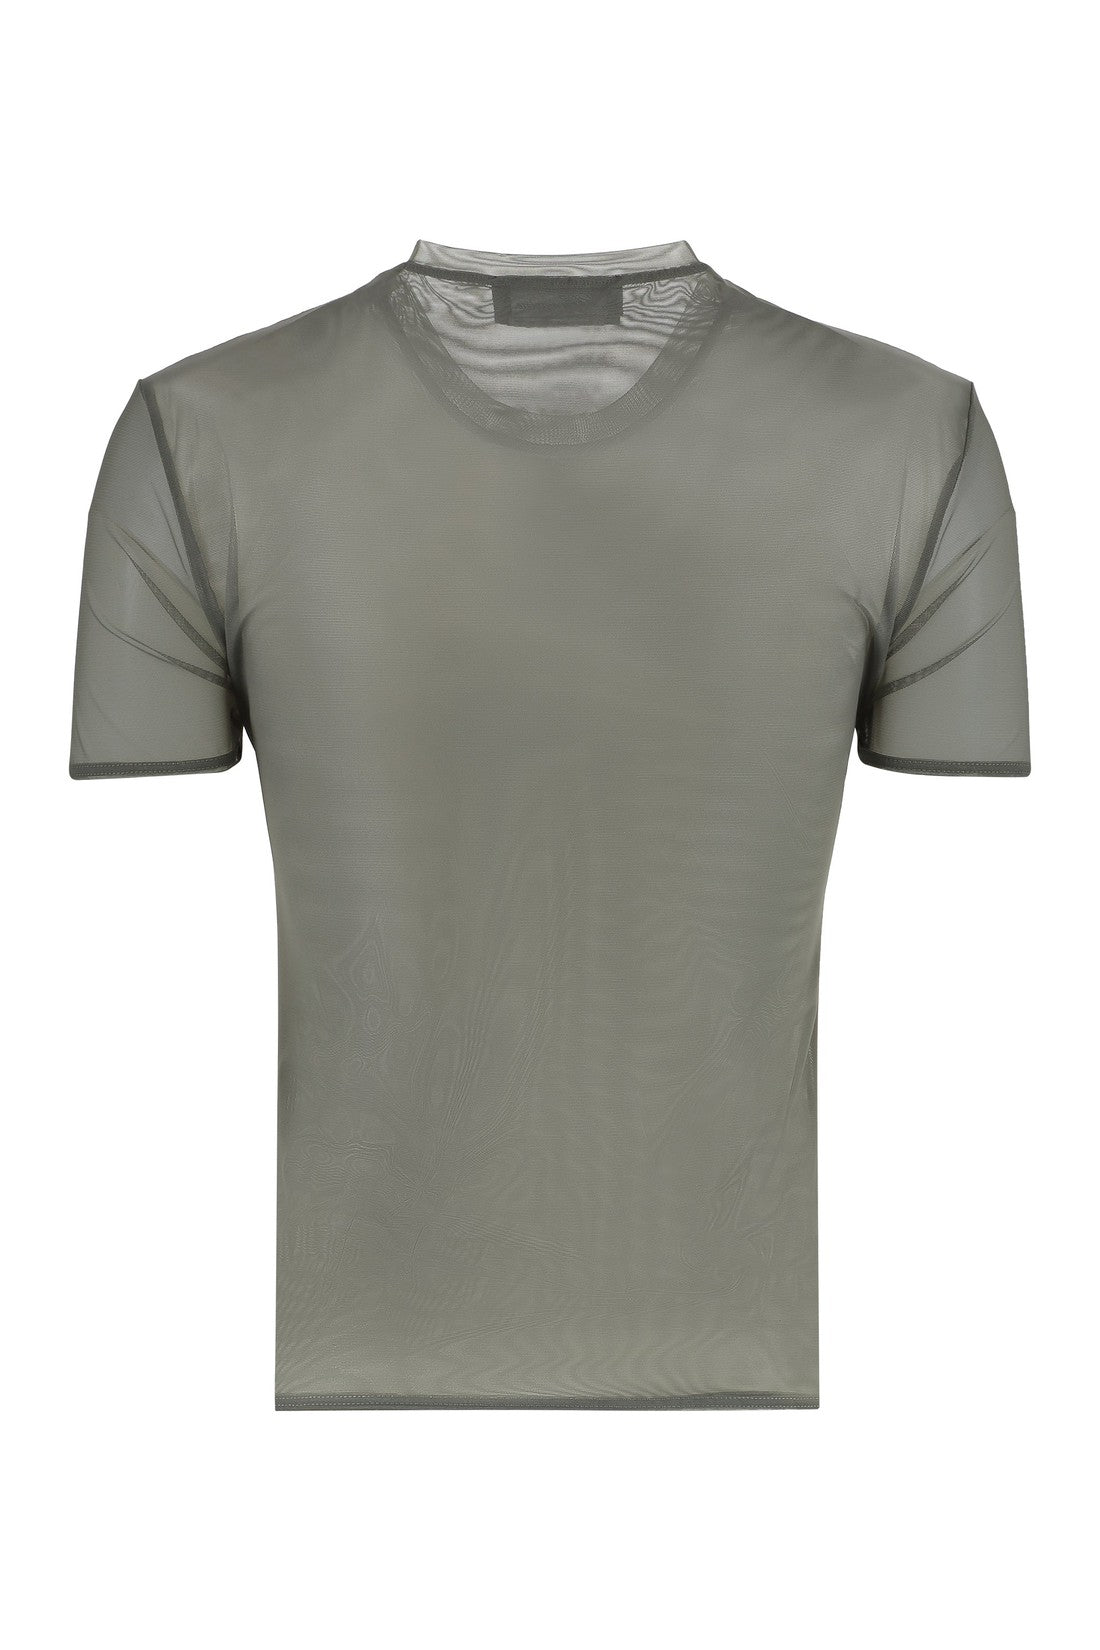 Blumarine-OUTLET-SALE-Tulle t-shirt-ARCHIVIST